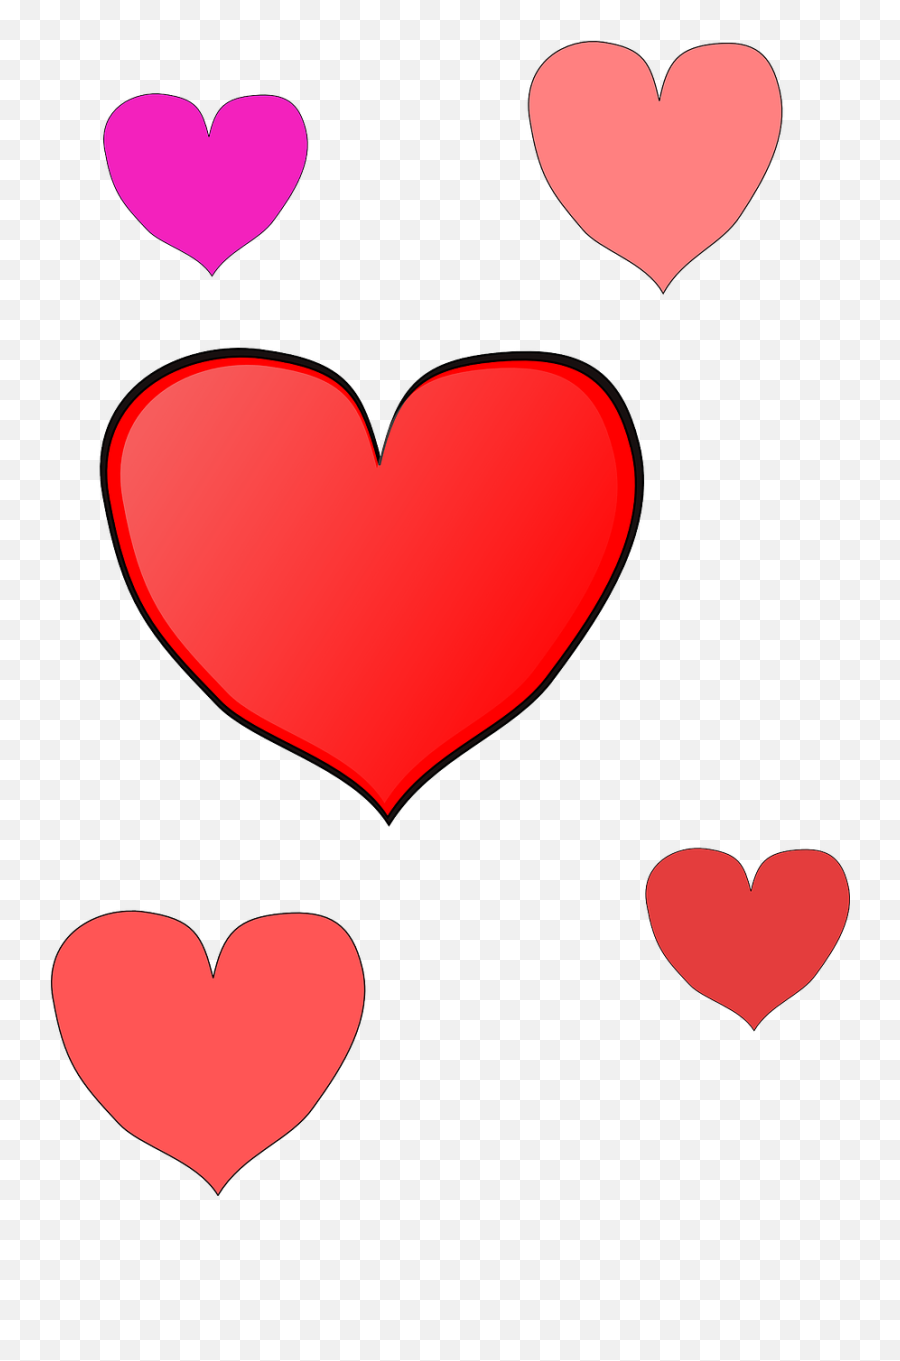 Download Free Photo Of Heartsredpinklovefeeling - From Hình Trái Tim Màu Emoji,Emotion Poker